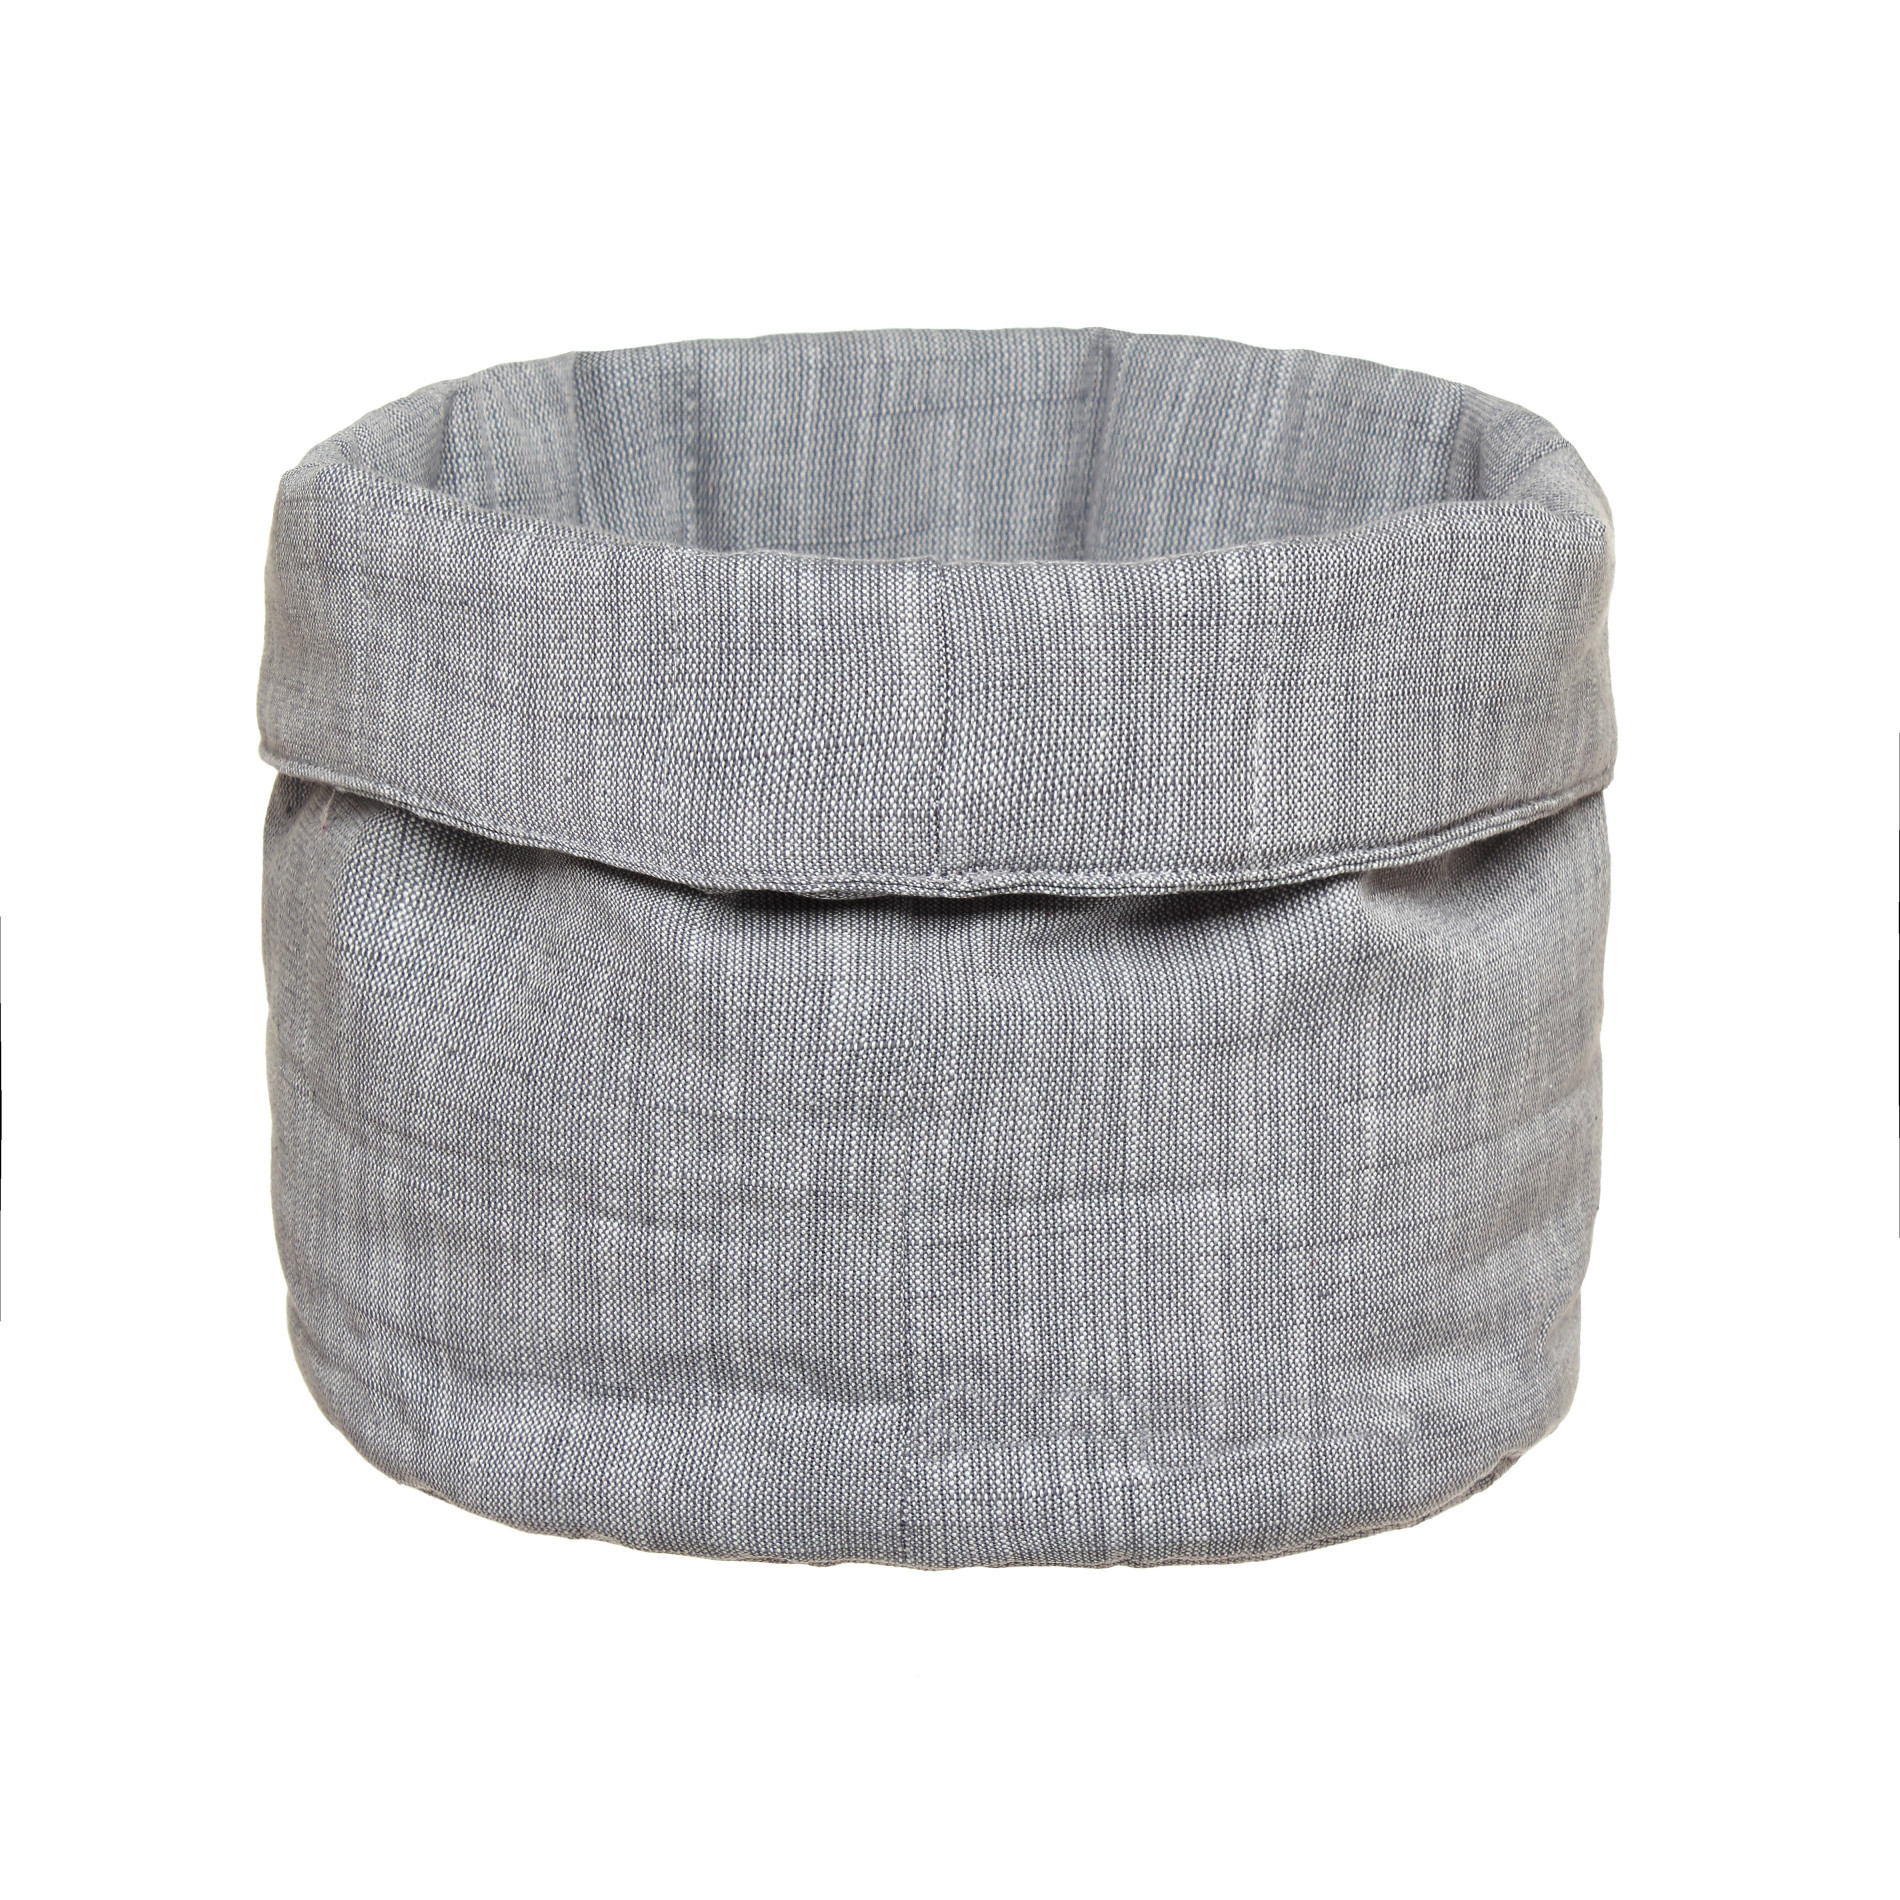 Round quilted mÃ©lange basket, Grey, large image number 0